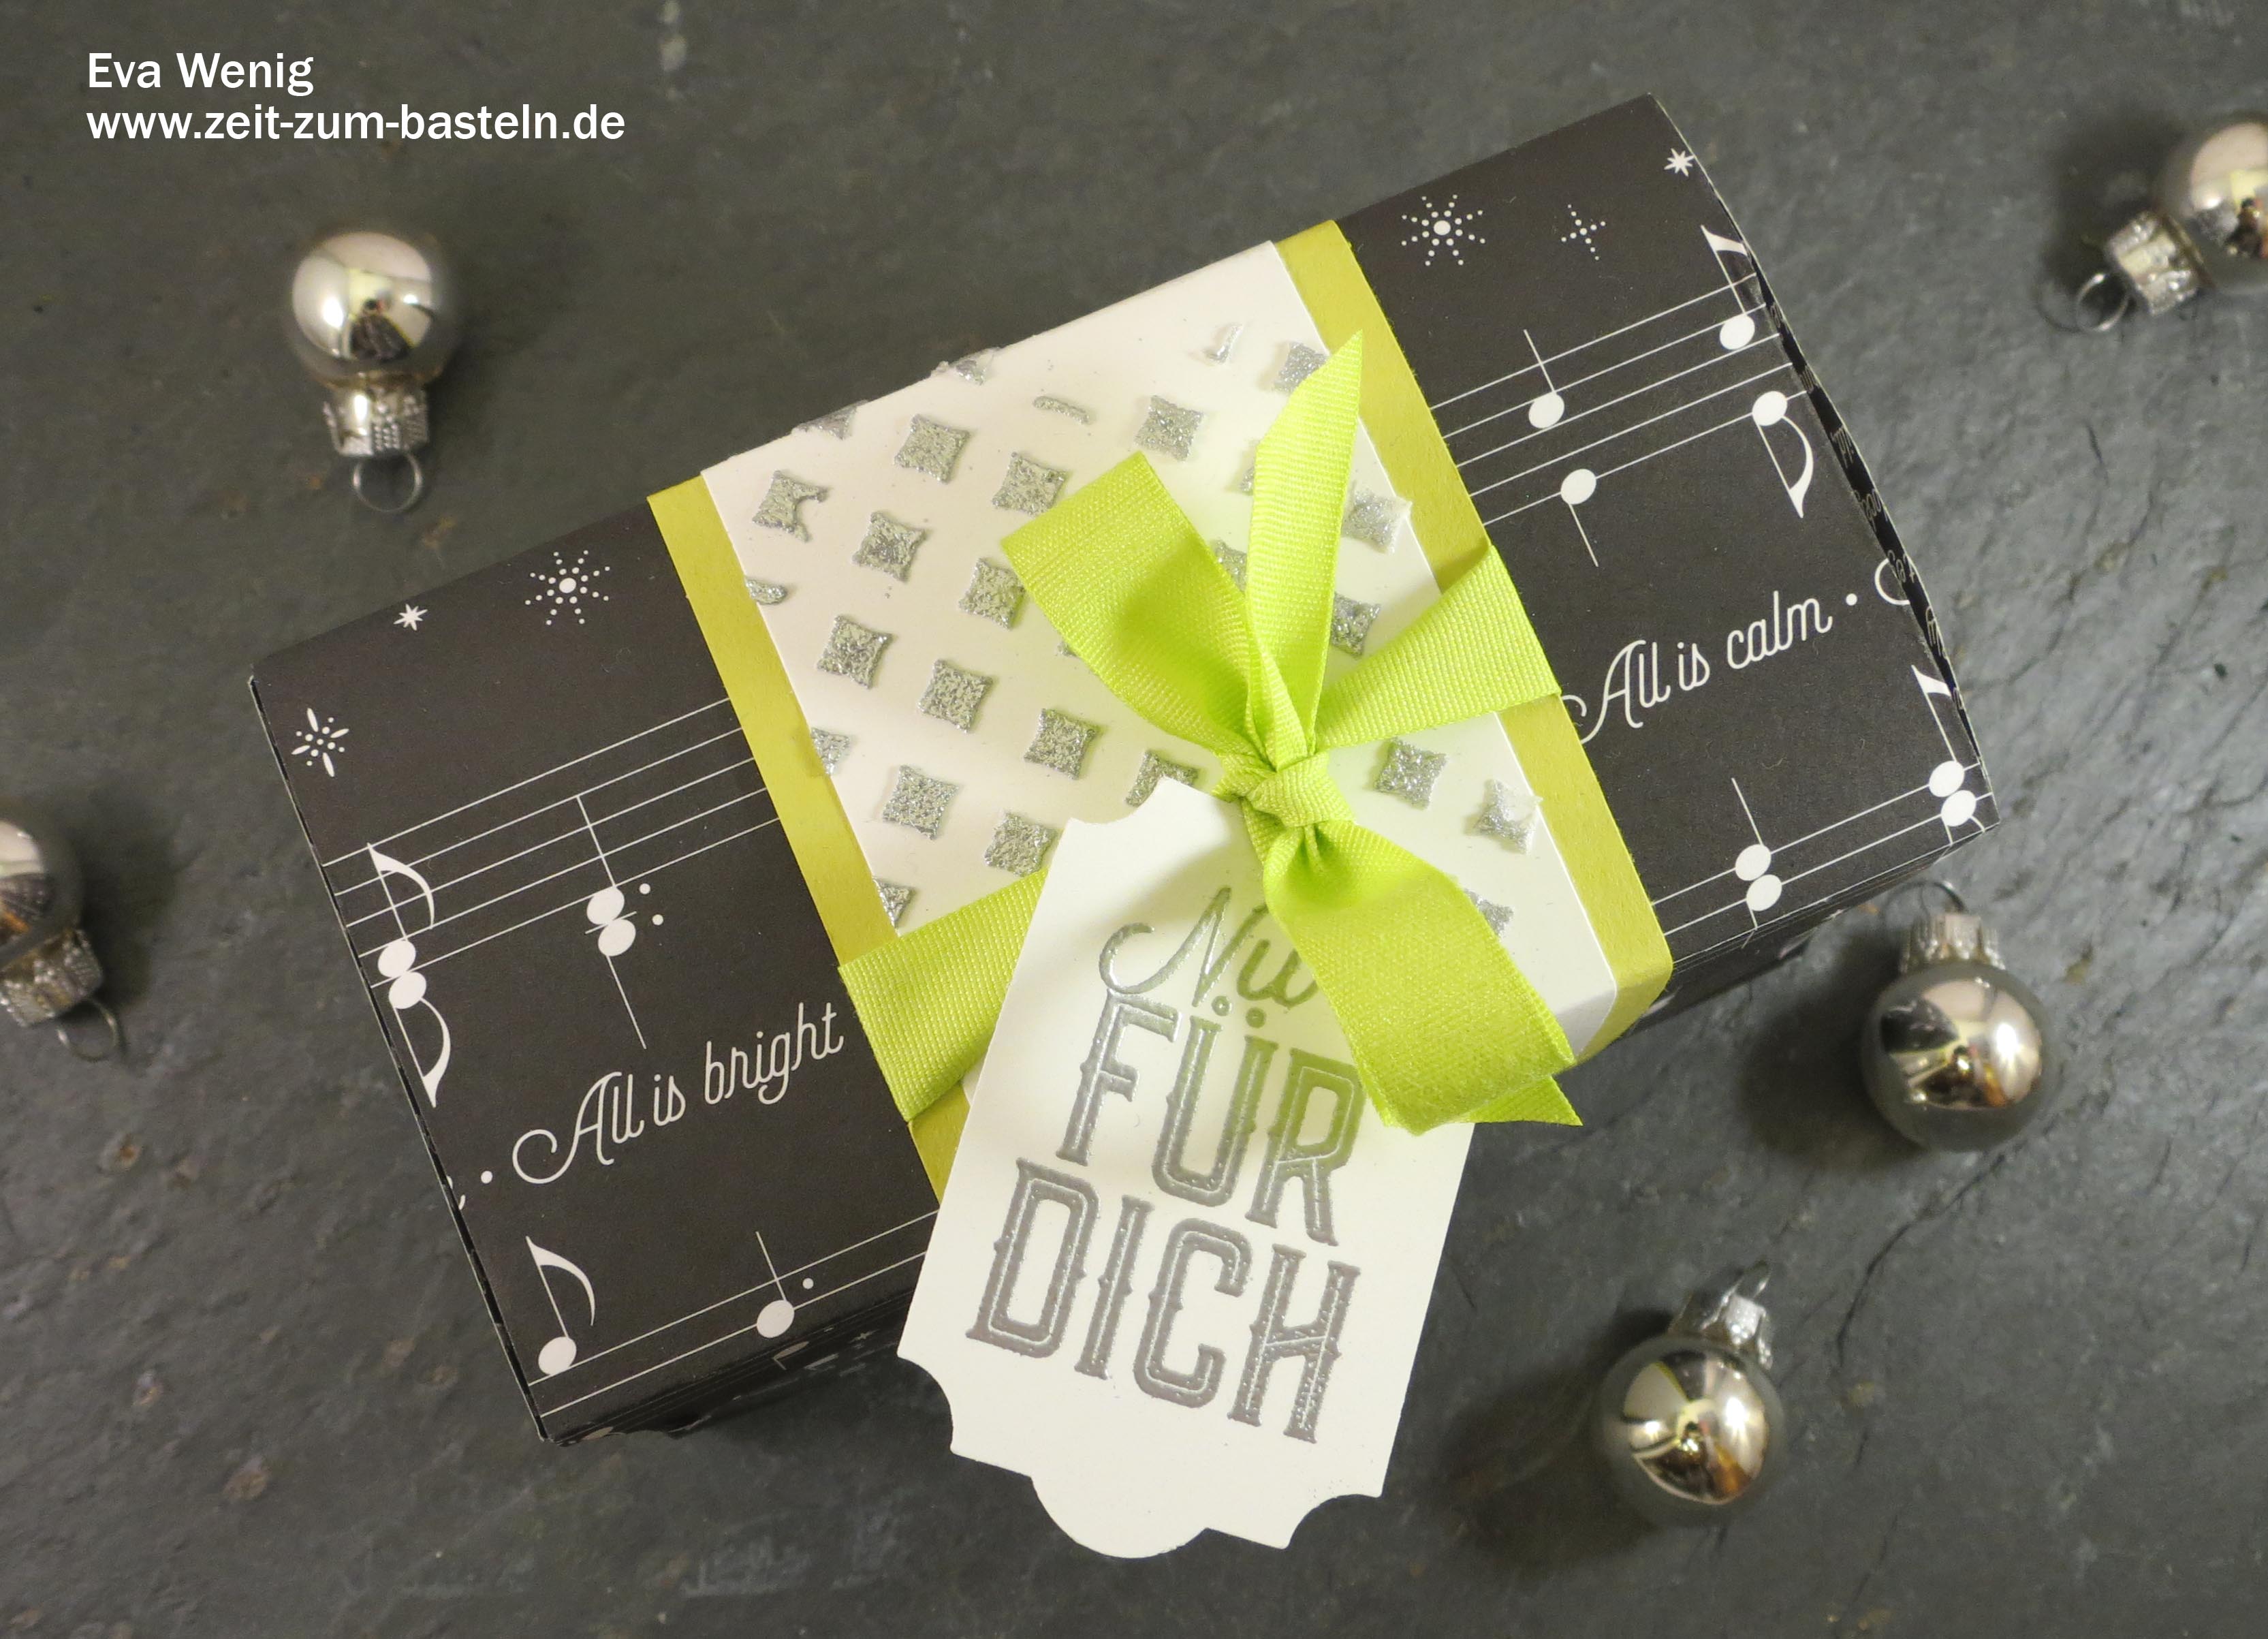 Weihnachtliche Box mit Strukturpaste und Embossingpulver - Stampin Up (Weihnachtliche Etiketten) - www.zeit-zum-basteln.de